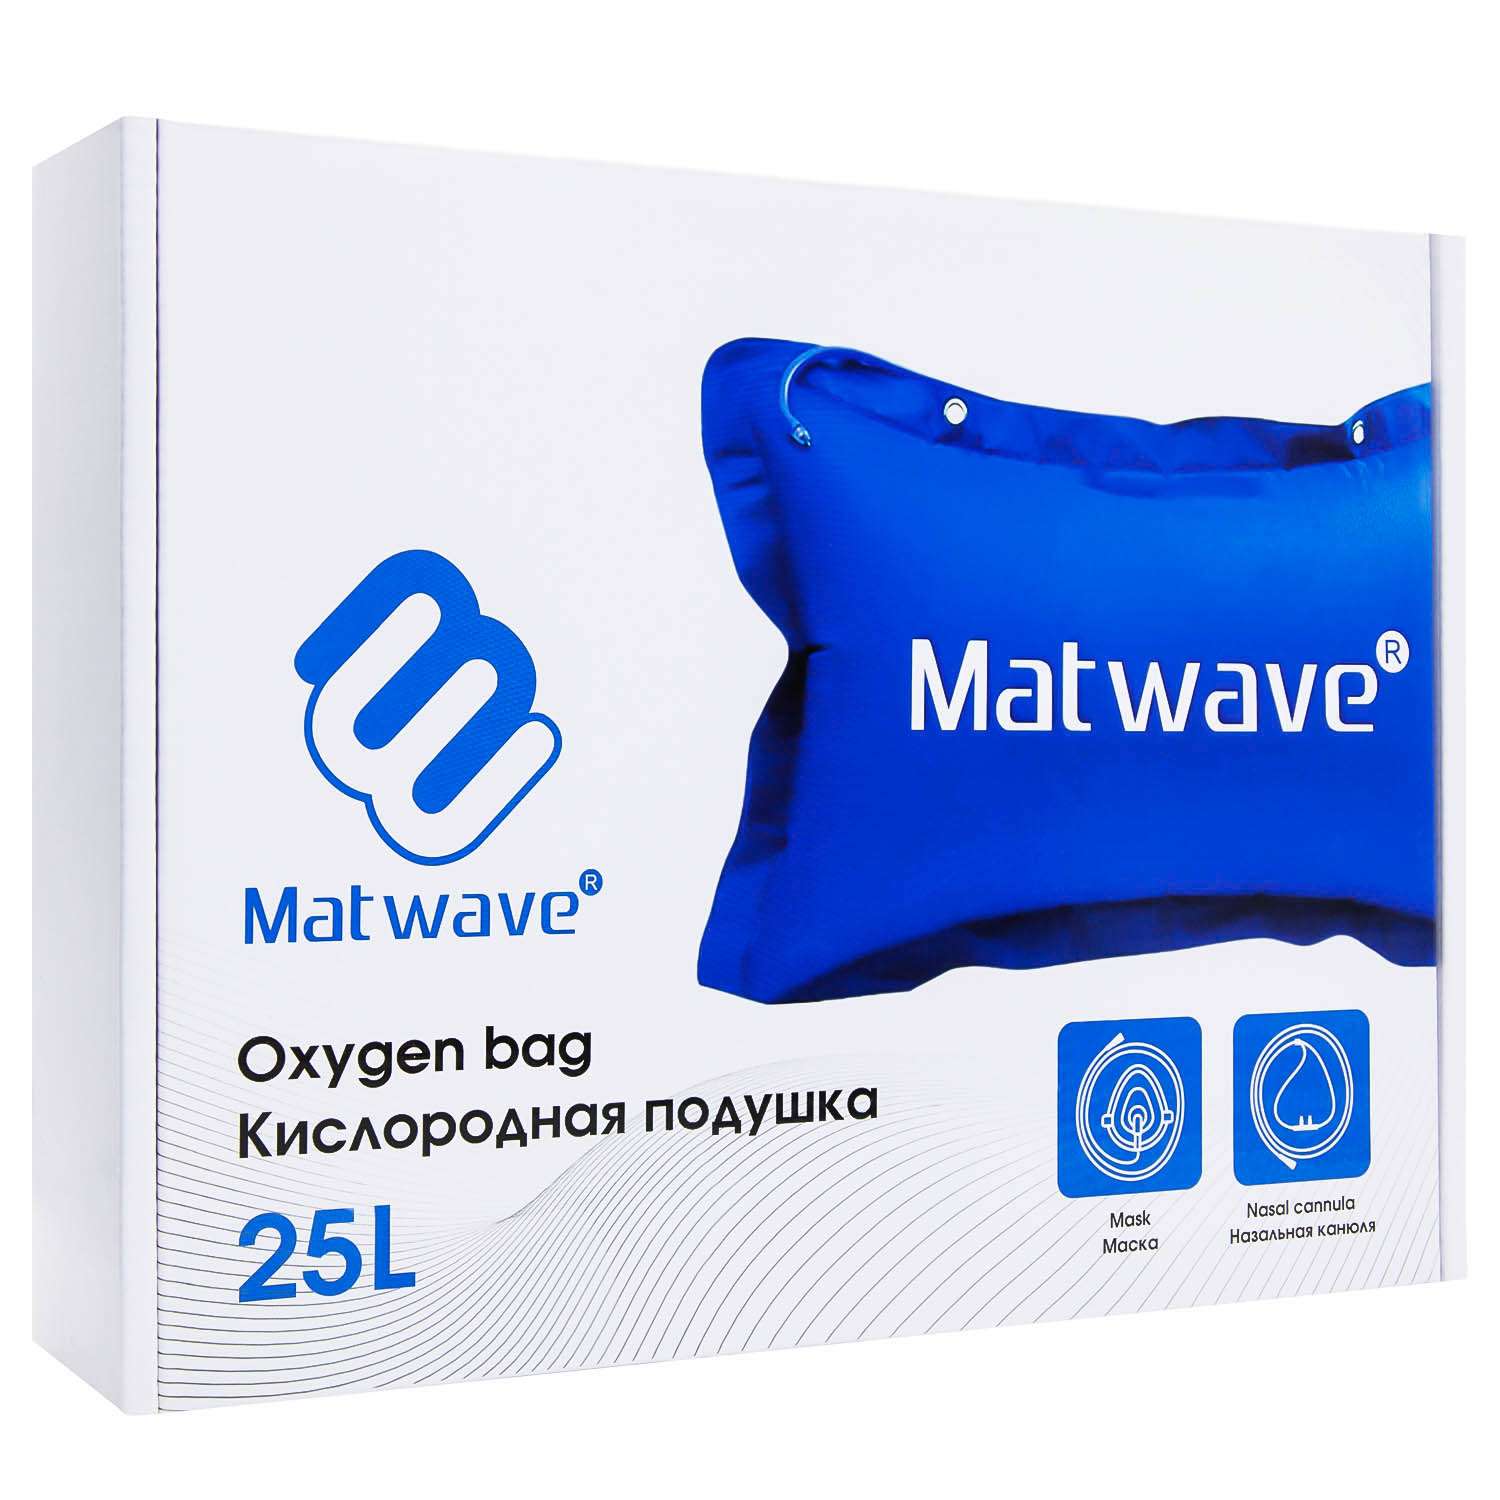 Кислородная подушка Matwave 25L + 2 маски + назальная канюля - фото 12